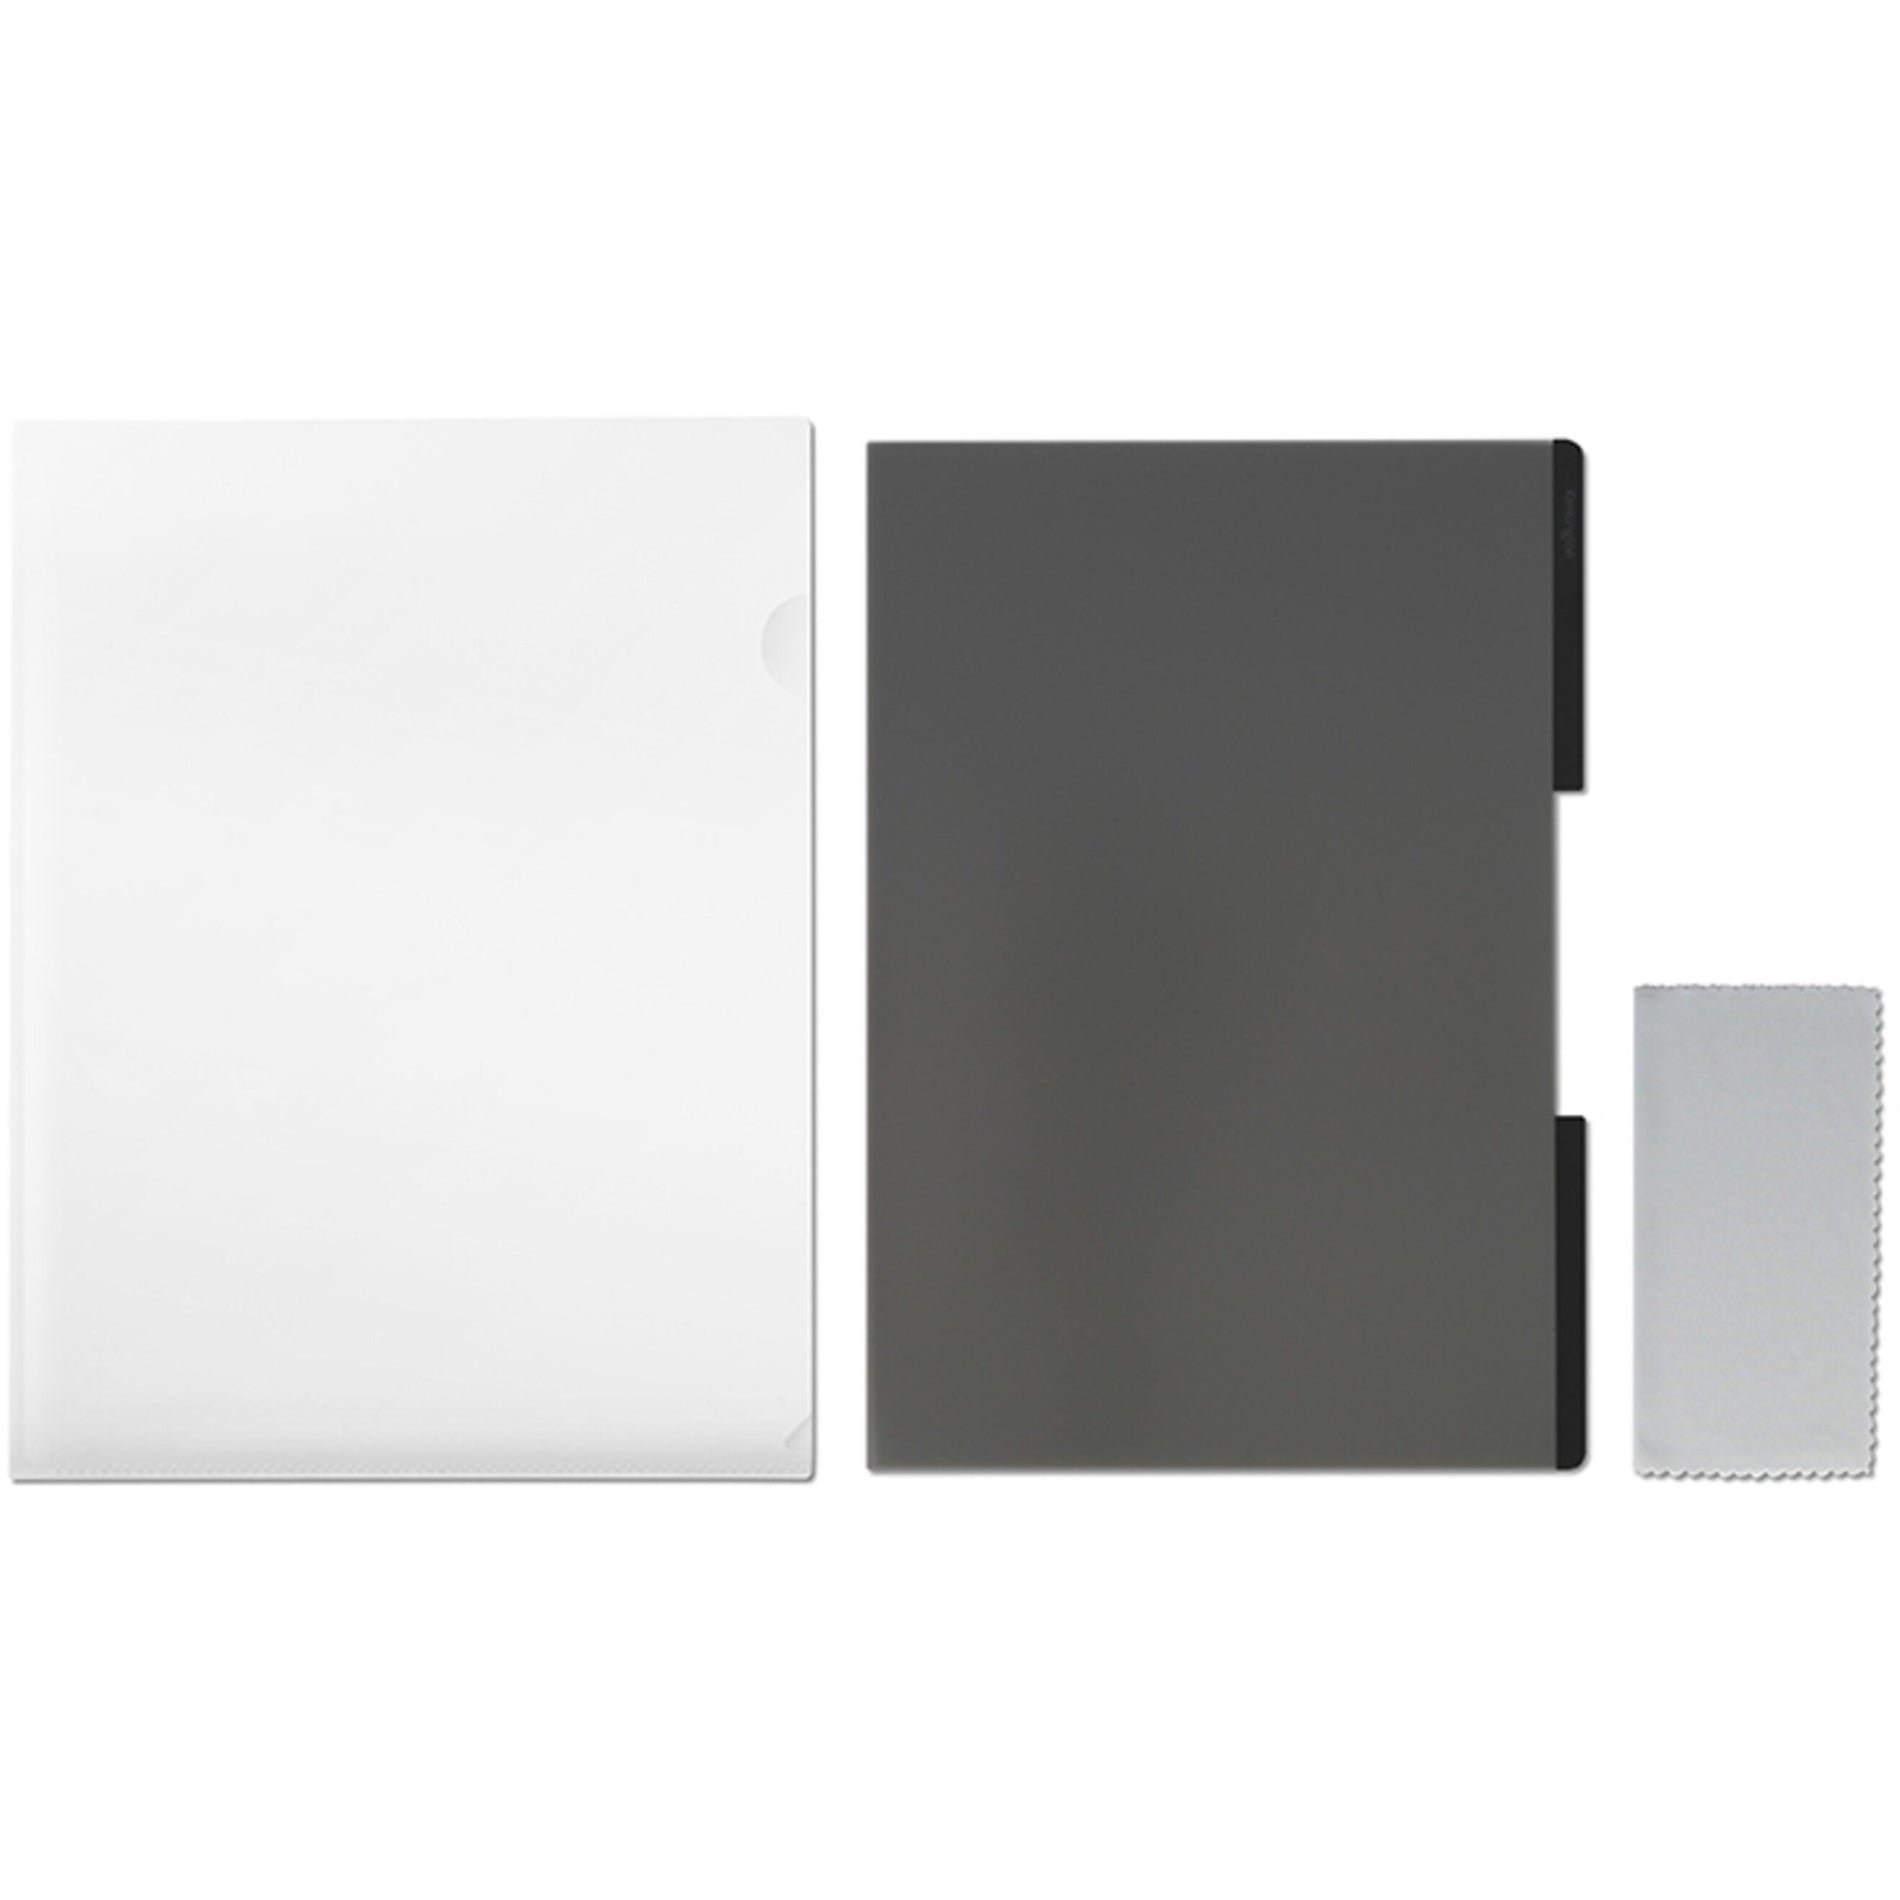 켄싱턴 K58362WW MagPro Elite 프라이버시 스크린 for Surface Laptop 3 15IN 자석식 터치 감도 양면 매트-글로시 블루 라이트 감소 반사 방지 프라이버시